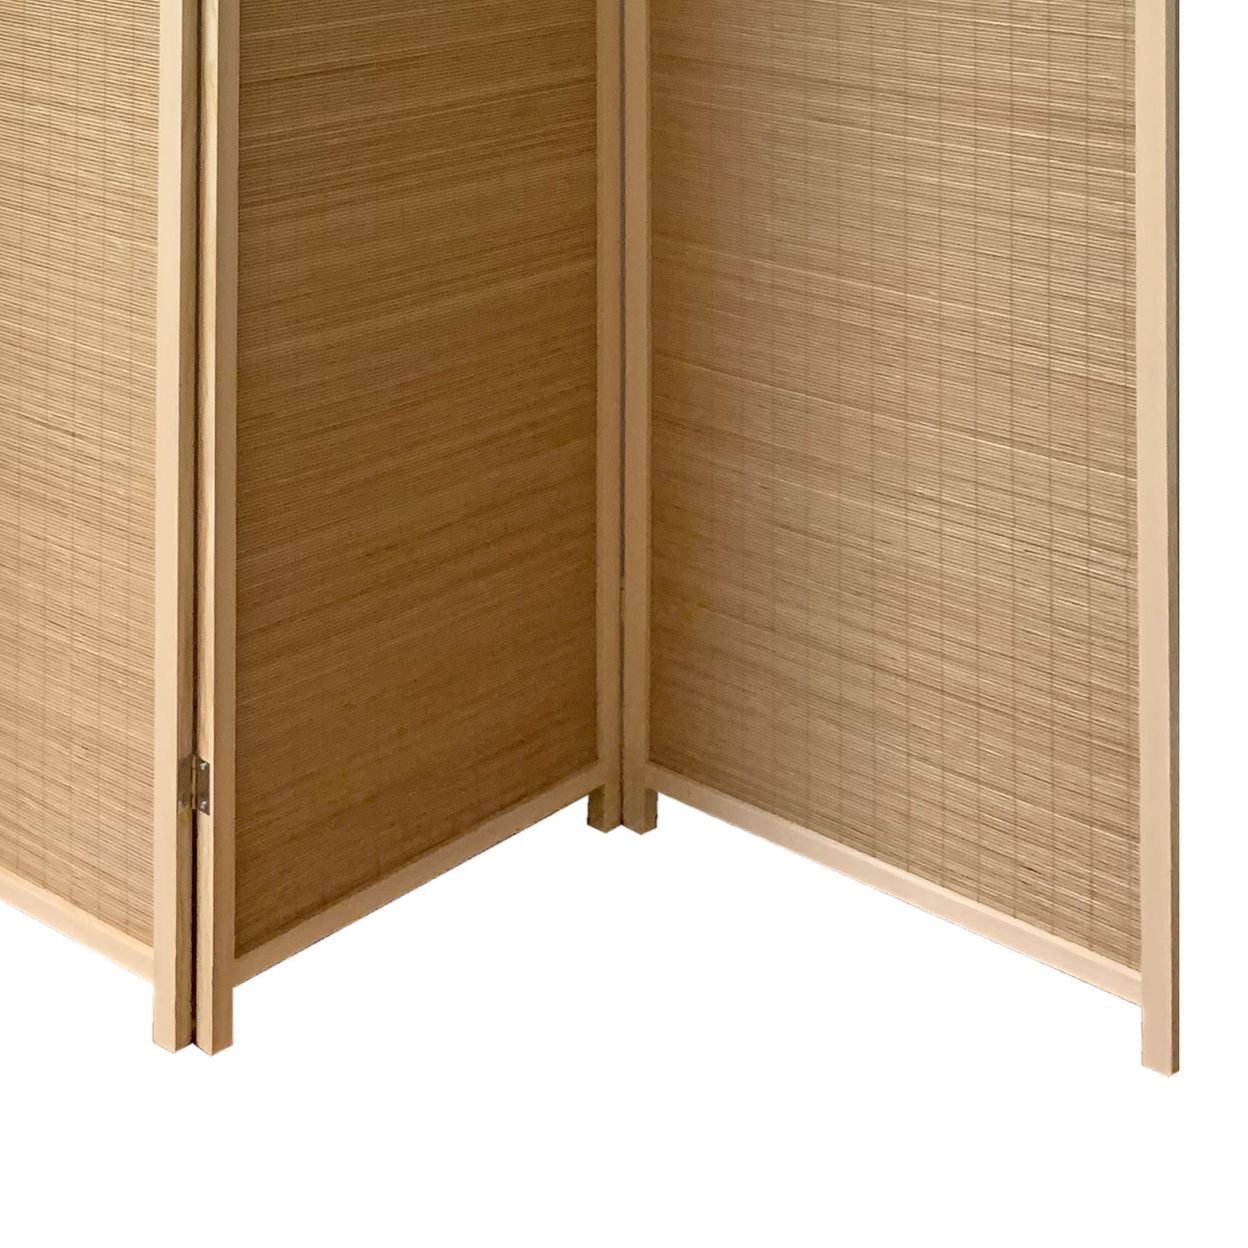 4 Panel Bamboo Shade Roll Room Divider, Natural Brown- Saltoro Sherpi